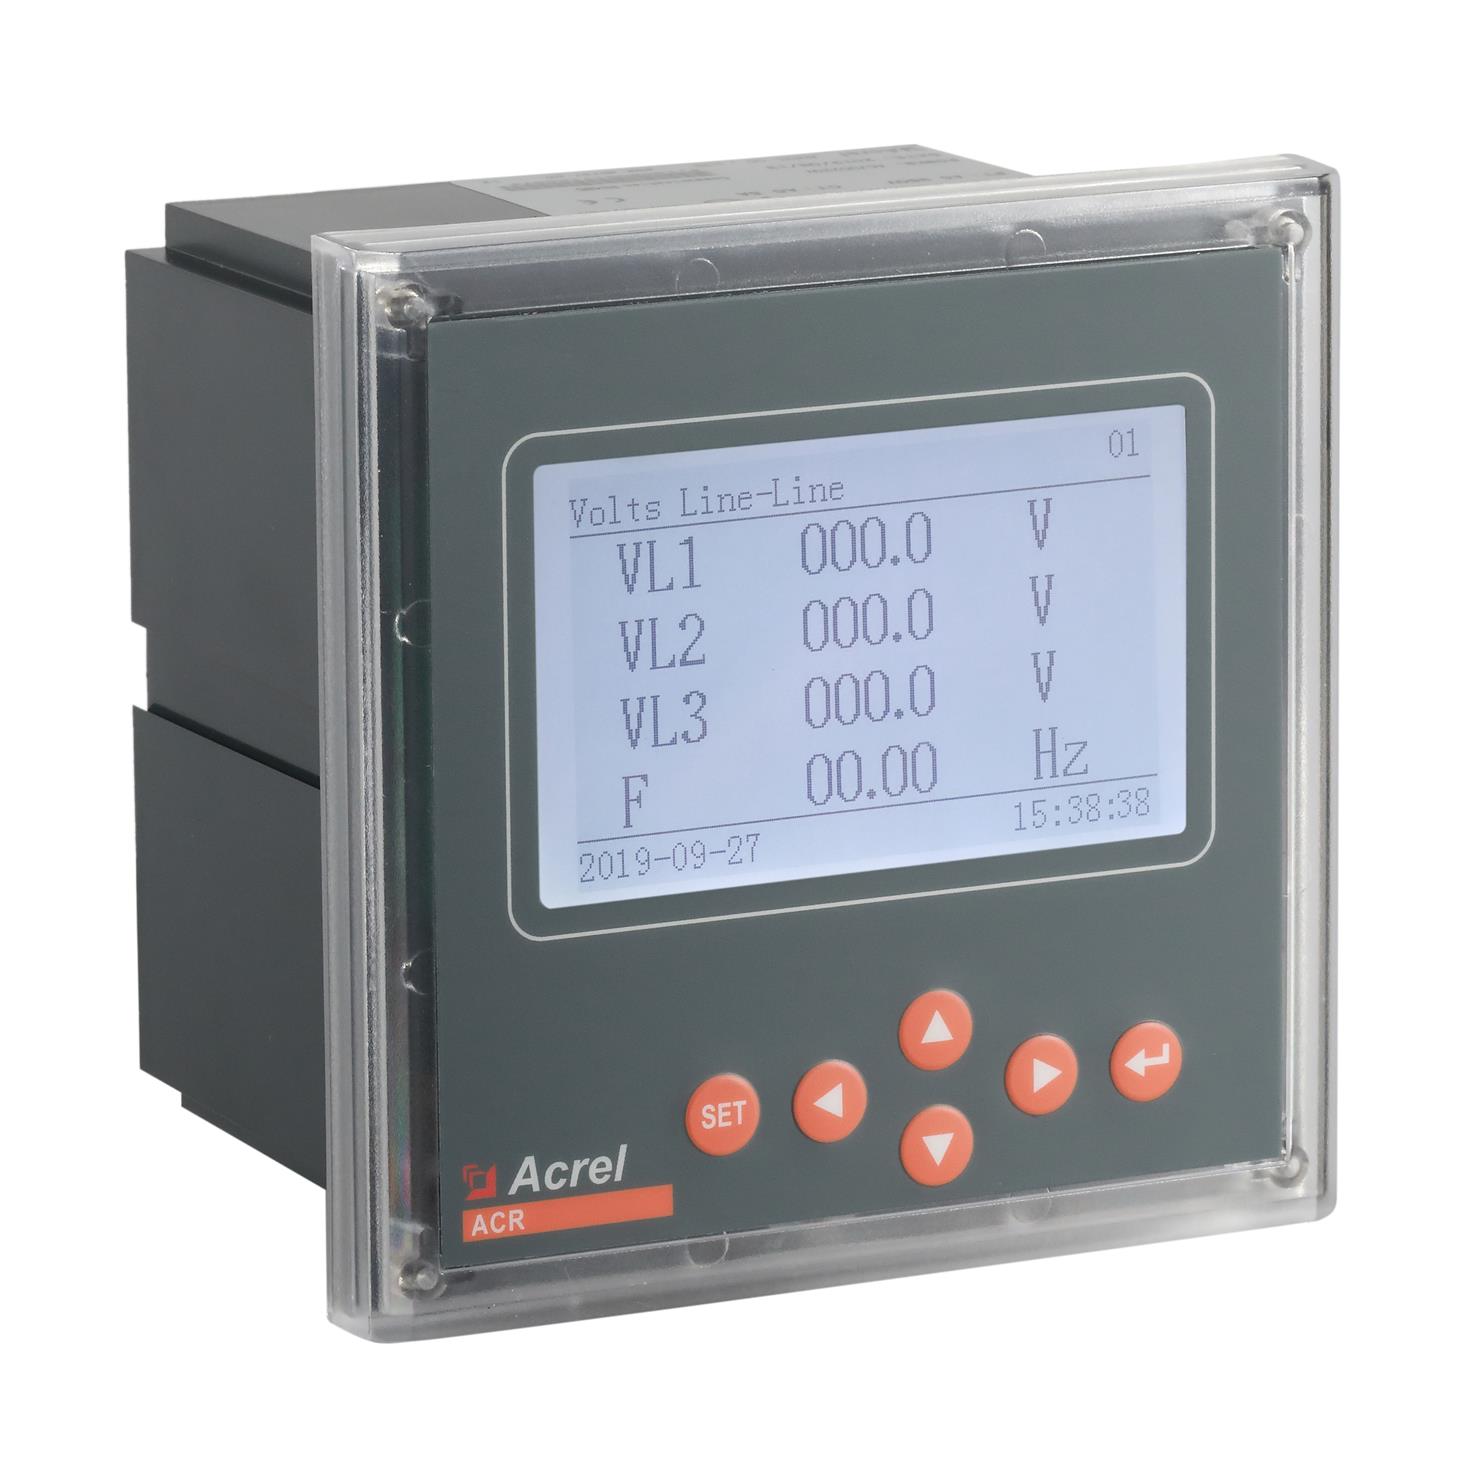 安科瑞 ACR330ELH 出线计量柜 电能质量监测仪表 多功能电表